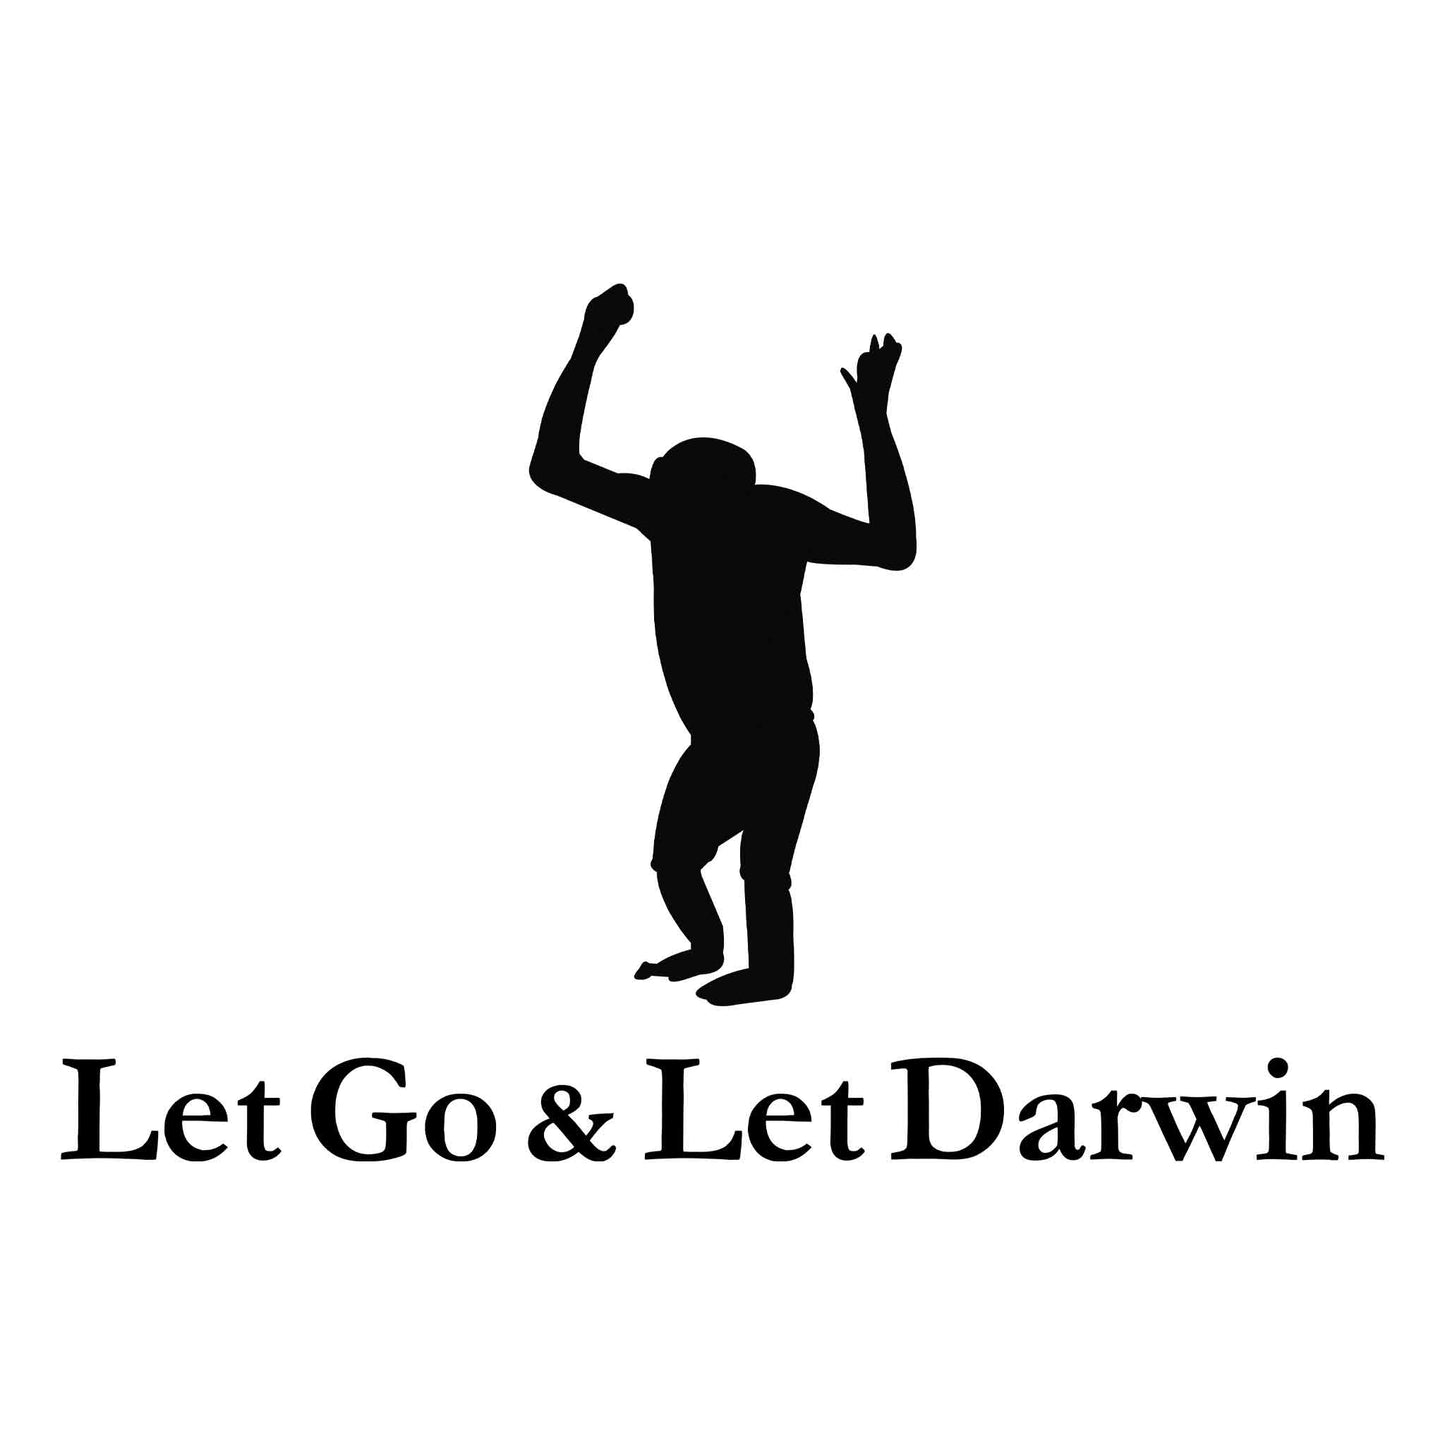 Let Go & Let Darwin T-Shirt